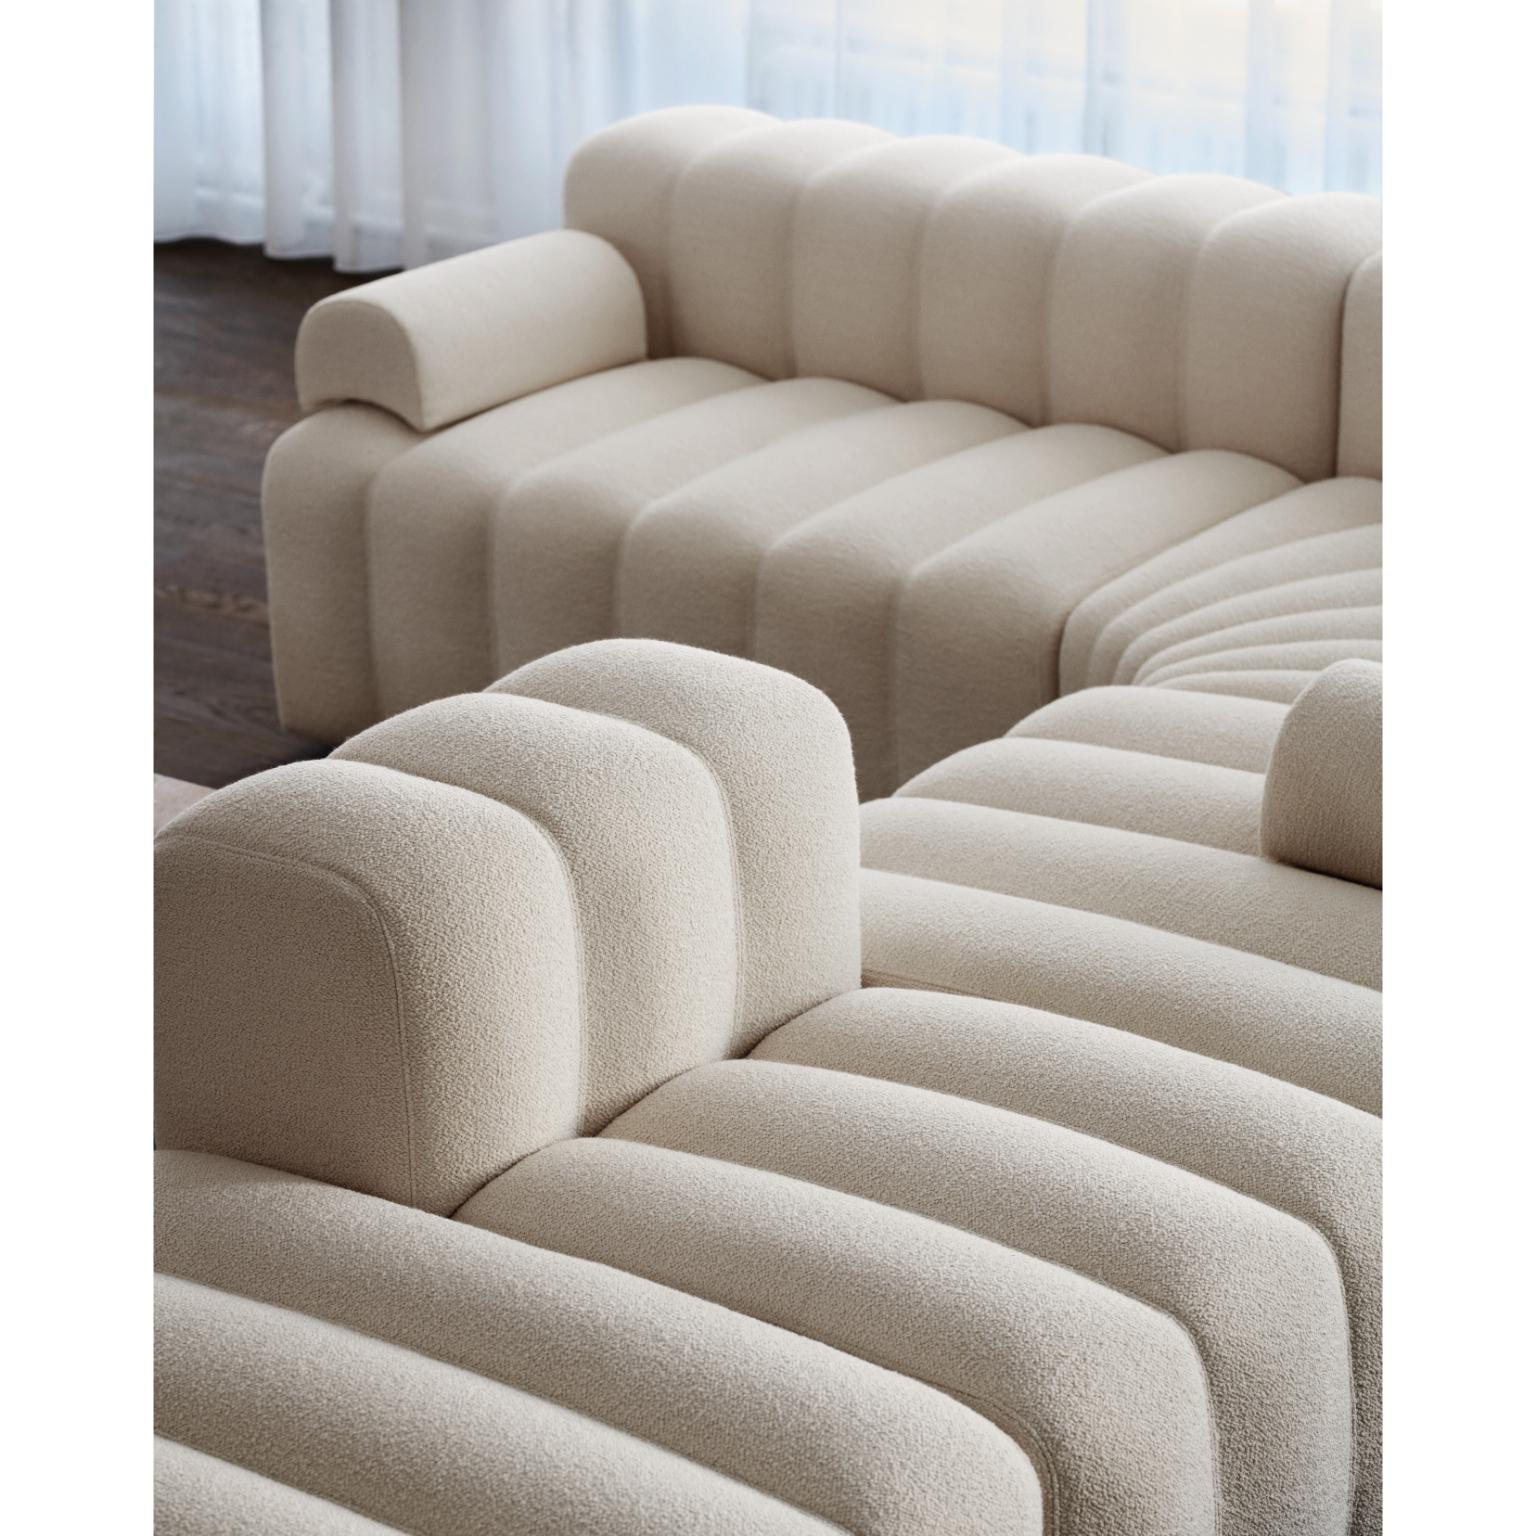 Großes modulares Studio-Lounge-Sofa von NORR11
Abmessungen: T 130 x B 120 x H 70 cm. SH 47 cm. 
MATERIALIEN: Schaumstoff, Holz und Polstermaterial.
Polstermöbel: Barnum Boucle Farbe 3.

Erhältlich in verschiedenen Polstervarianten. Eine